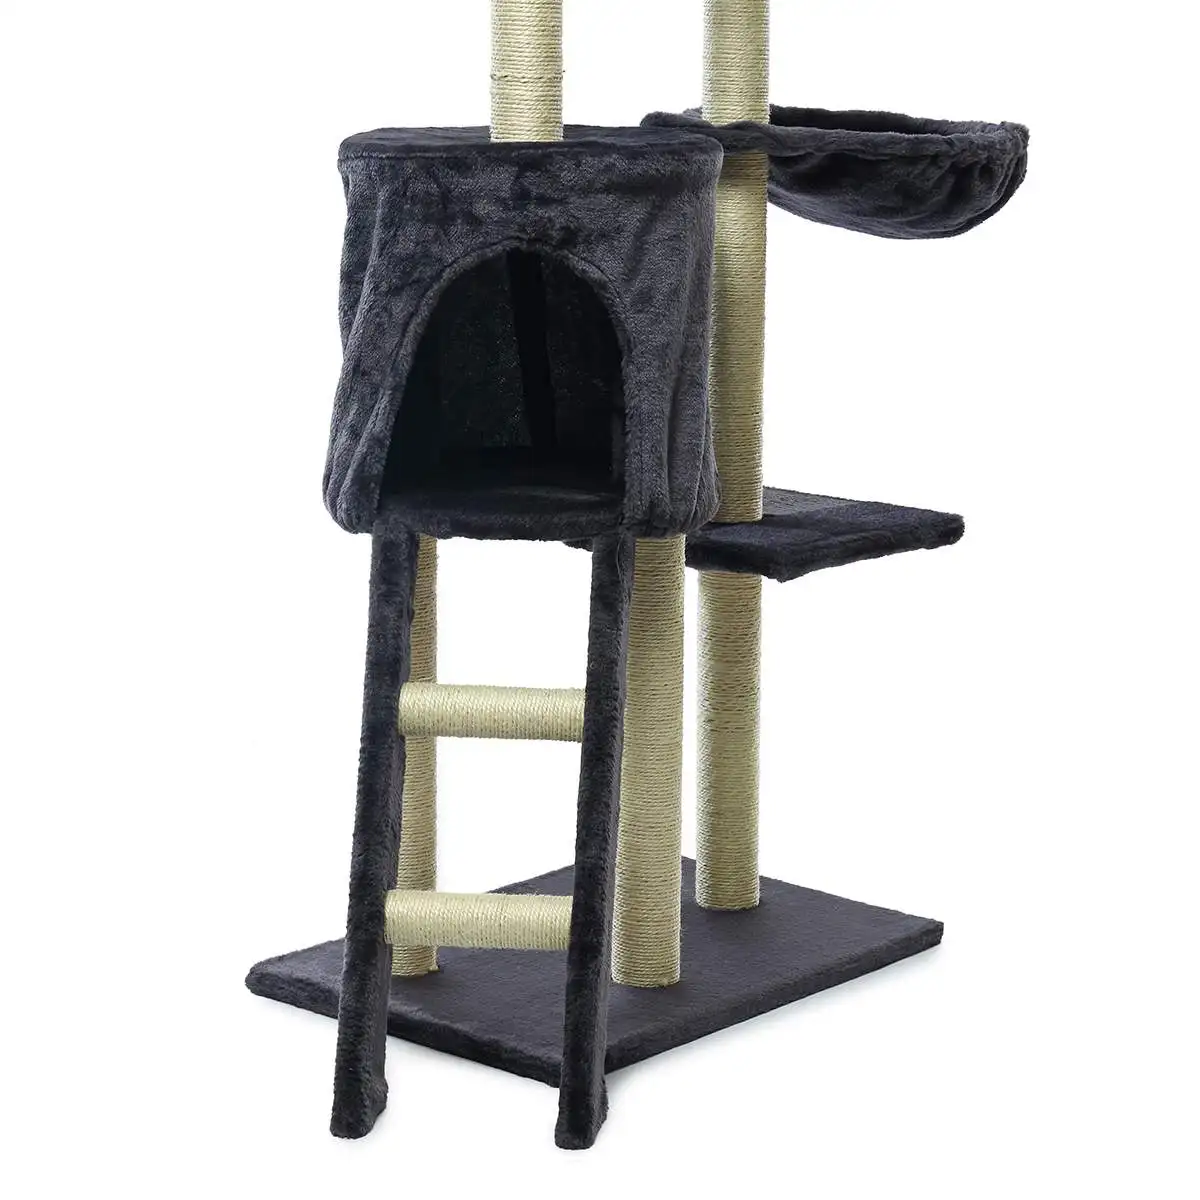 Каркас для скалолазания кошки Серый Бежевый Когтеточка дерево скребок полюс мебель для спортзала дом игрушка кошка прыжки платформа 50*35*140 см